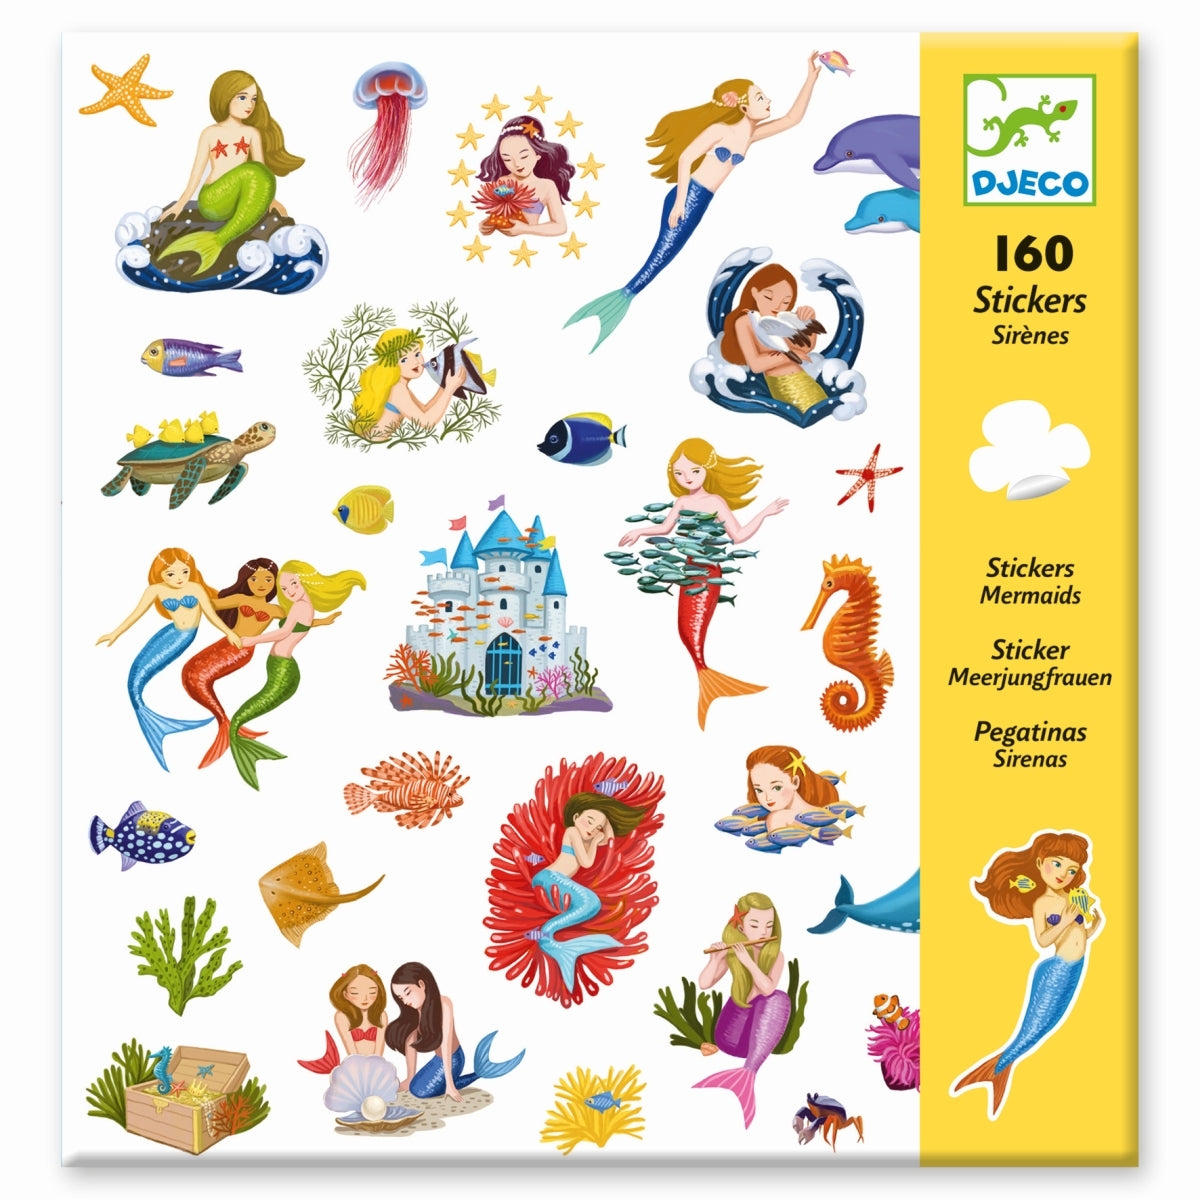 Ein Set mit 160 Stickern, um in das faszinierenden Universum der Meerjungfrauen einzutauchen. Meerestiere, schöne Meerjungfrauen, andere Deko uvm. Alle sind mit dabei! Das Kind klebt die zahlreichen Sticker nach Wunsch auf und erschafft schöne Unterwasserszenen oder nutzt sie als Dekoration für andere Objekte.